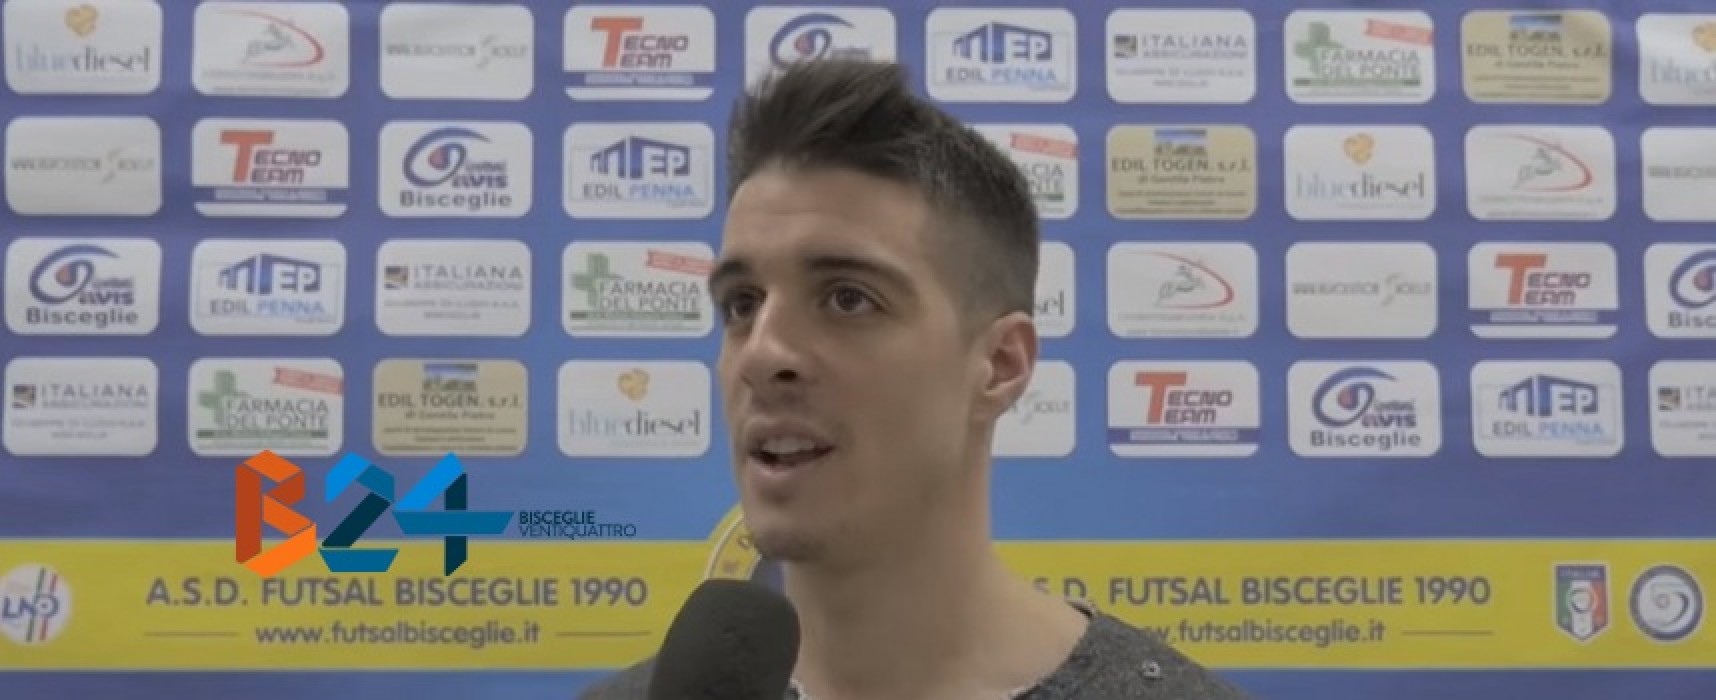 Futsal Bisceglie, vincere col Matera per mantenere il secondo posto / VIDEO intervista Ortiz